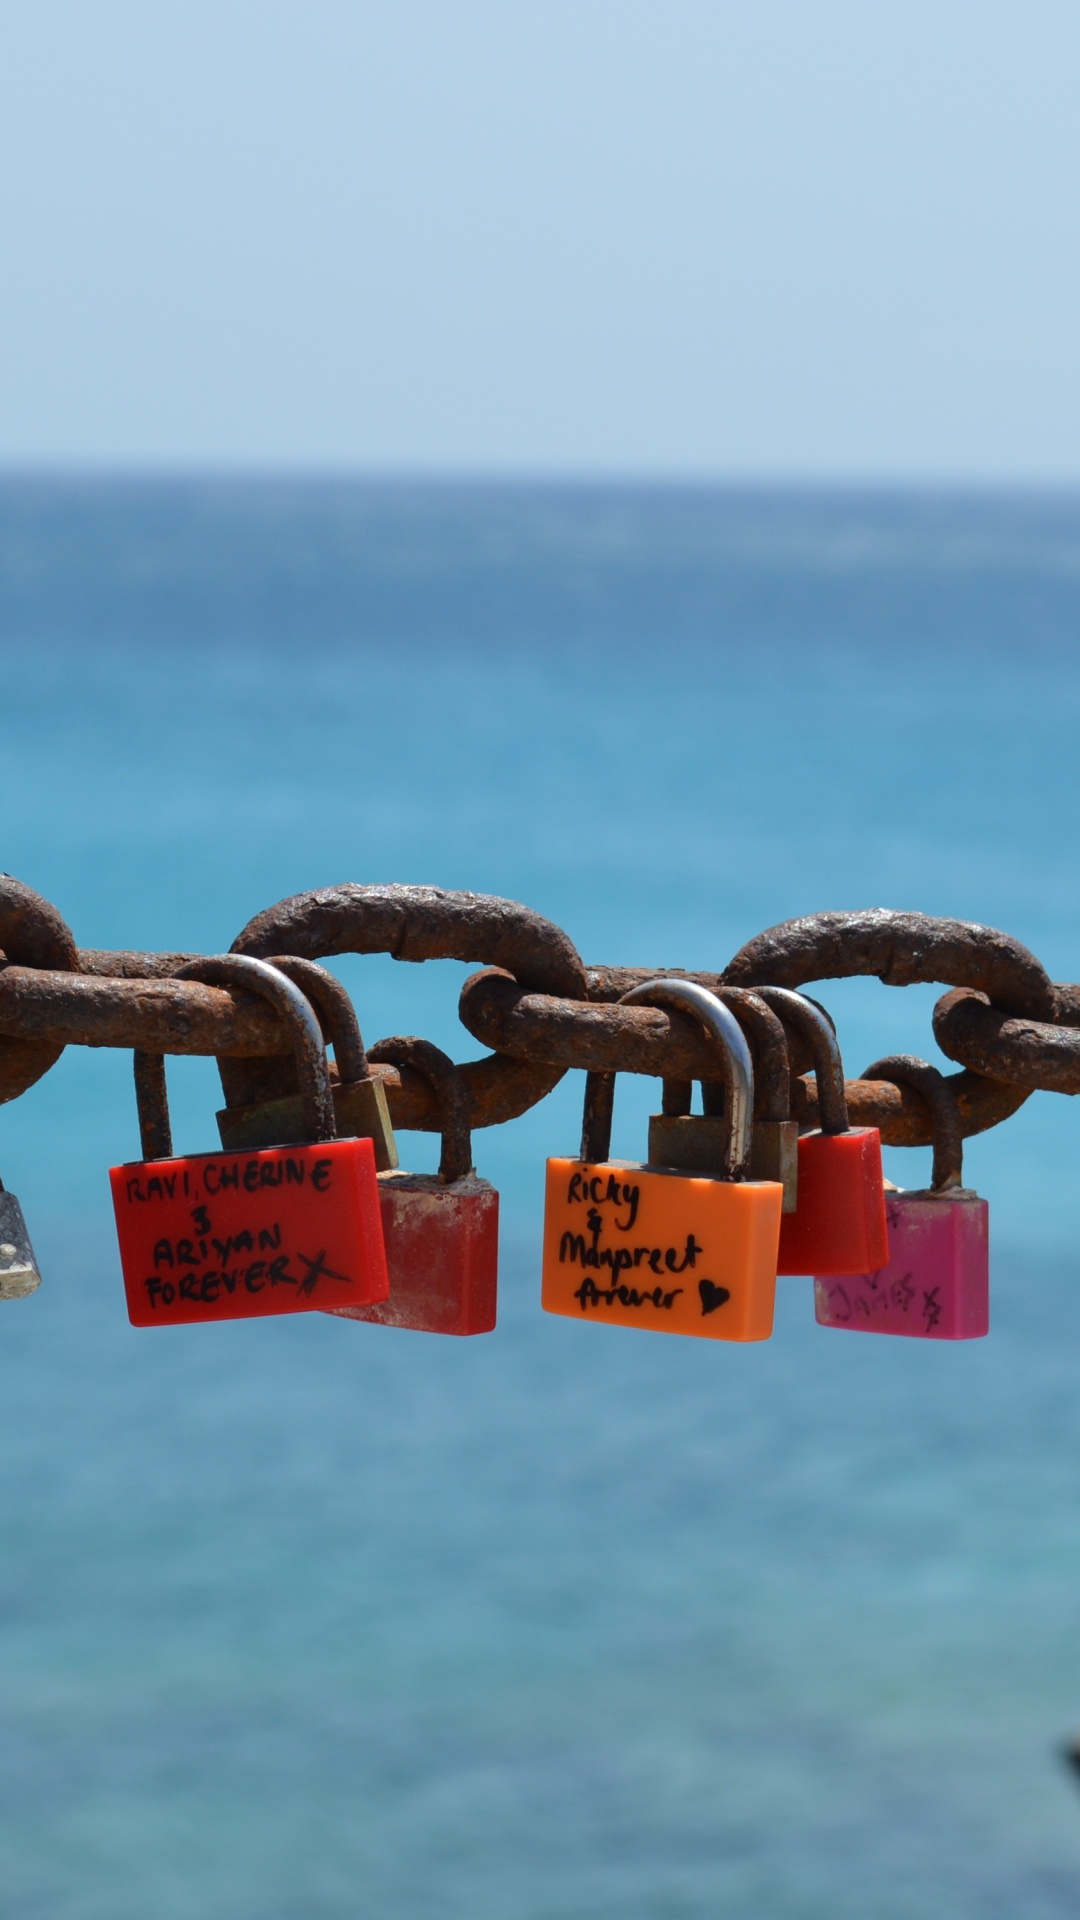 挂锁, 锁定, 锁和钥匙, 大海, 海洋 壁纸 1080x1920 允许